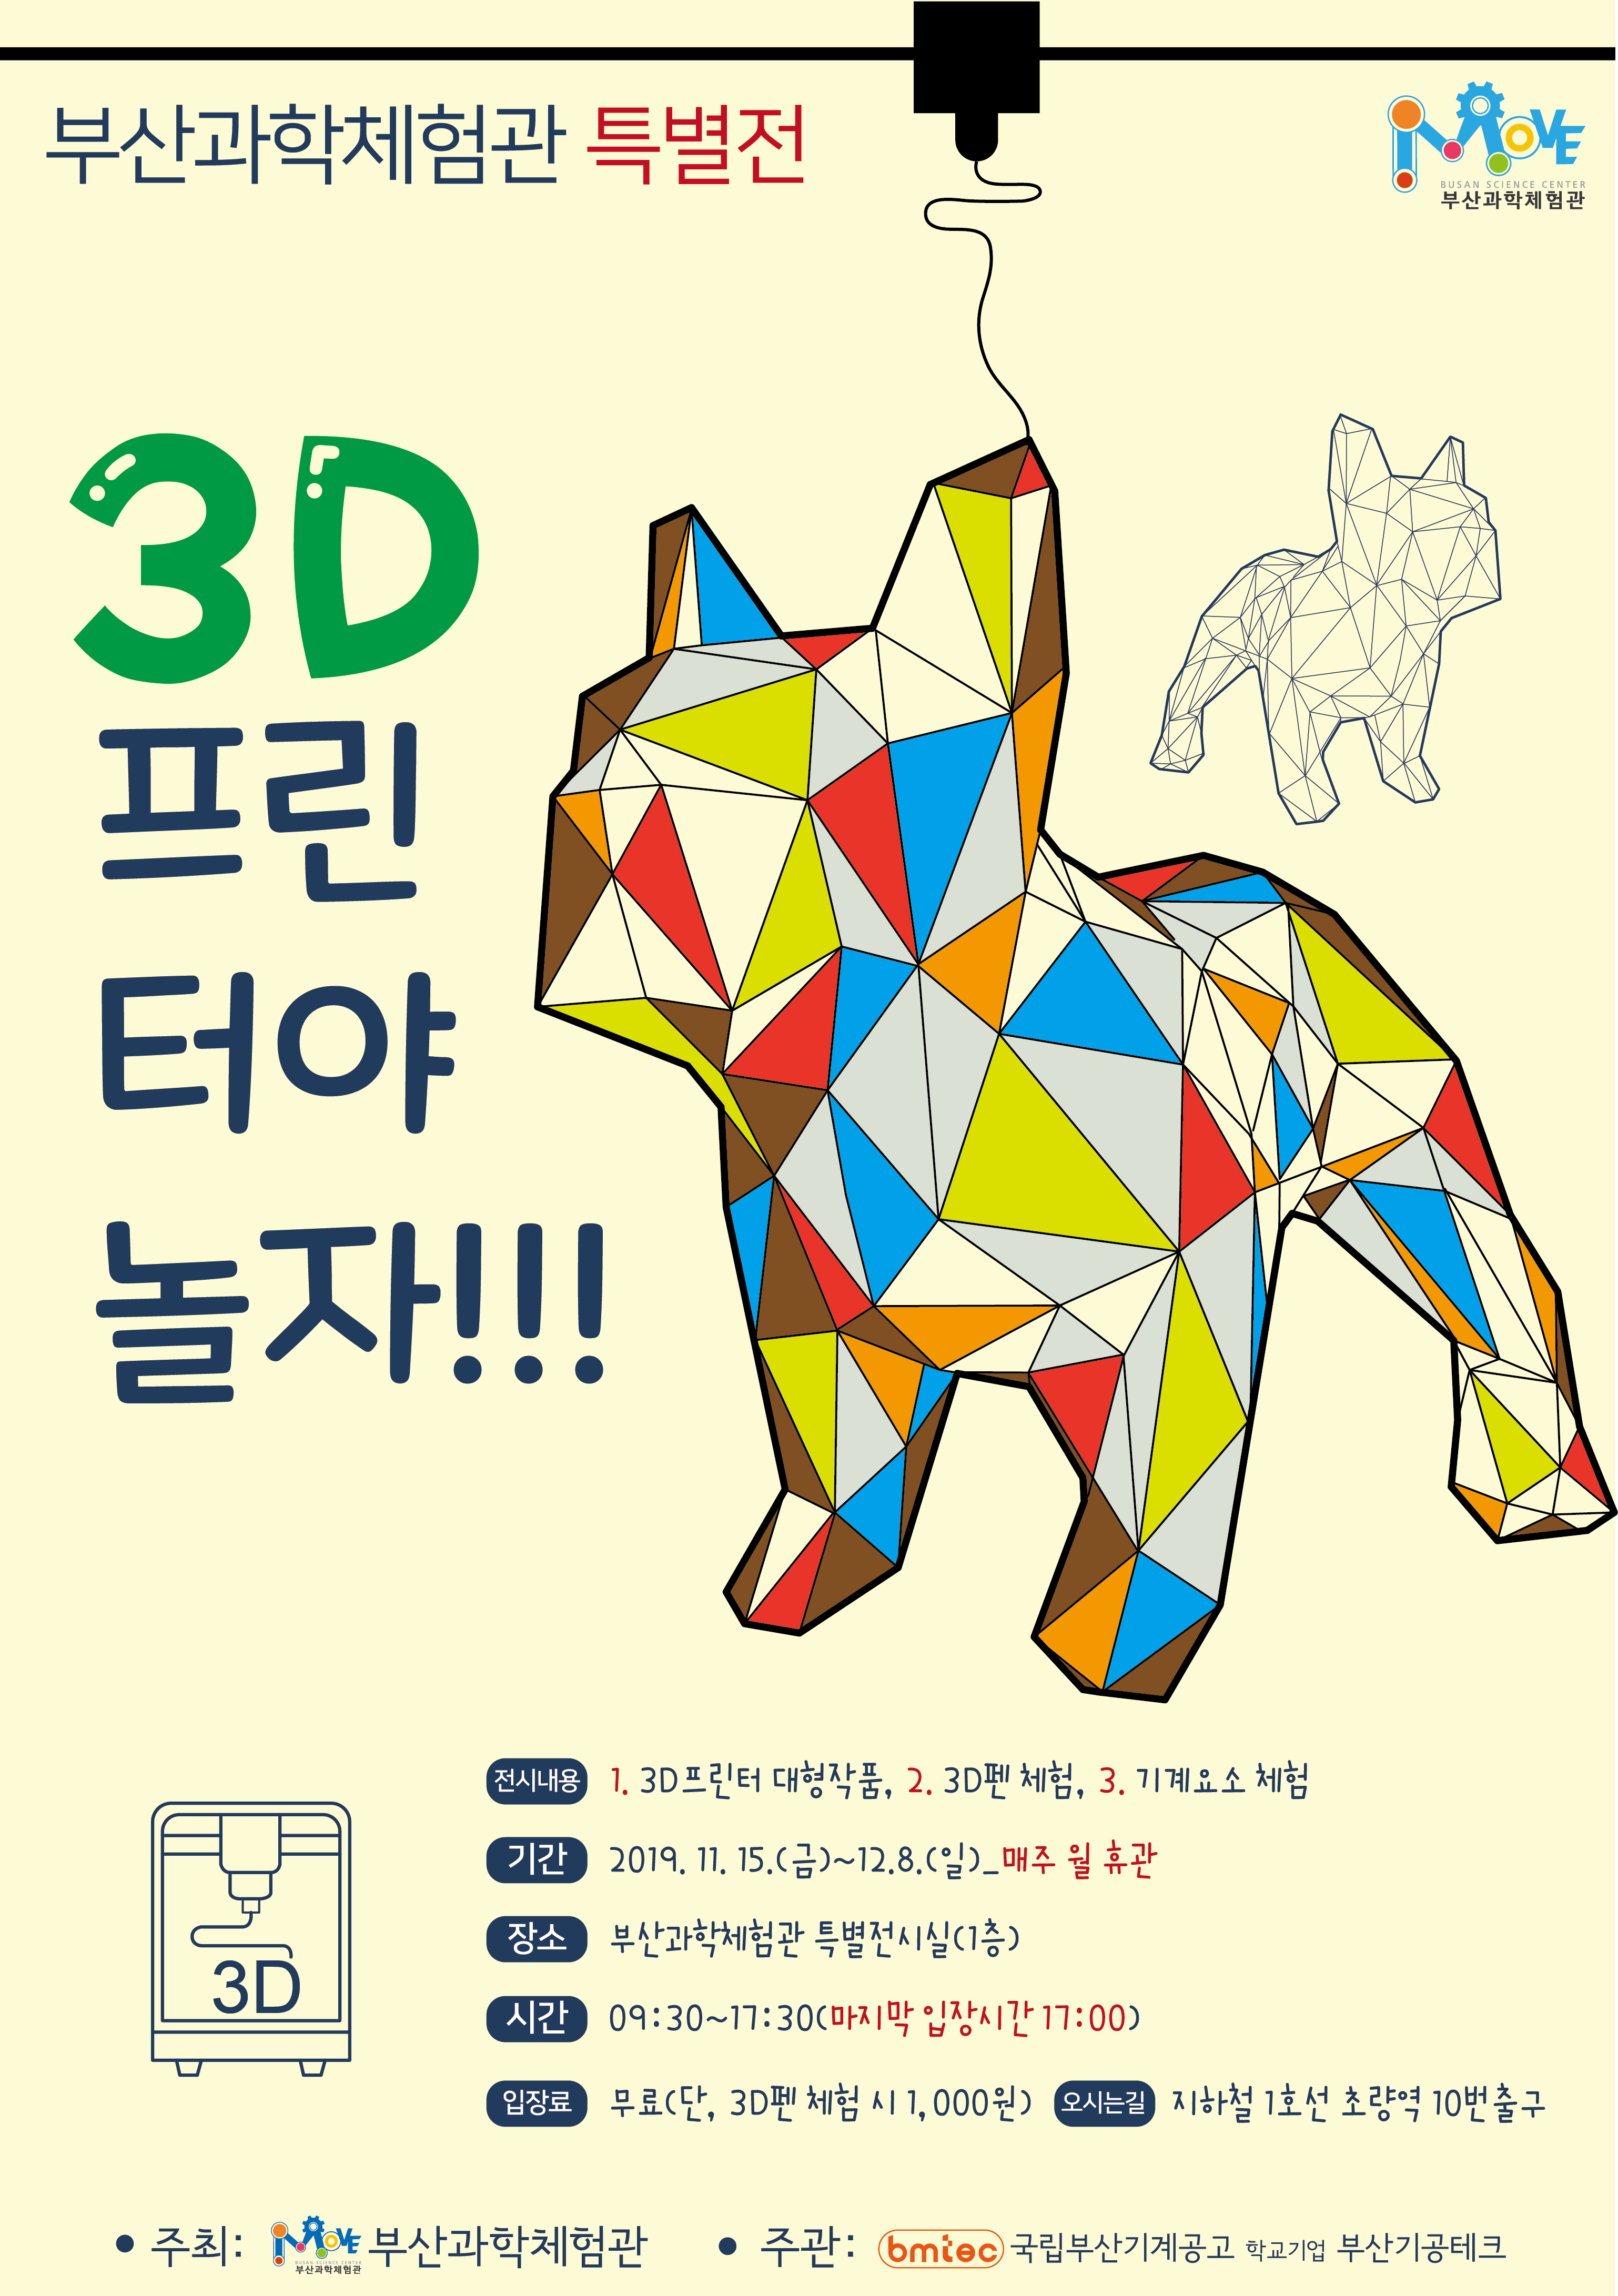 부산과학체험관,‘3D 프린터야 놀자’특별 전시회 개최